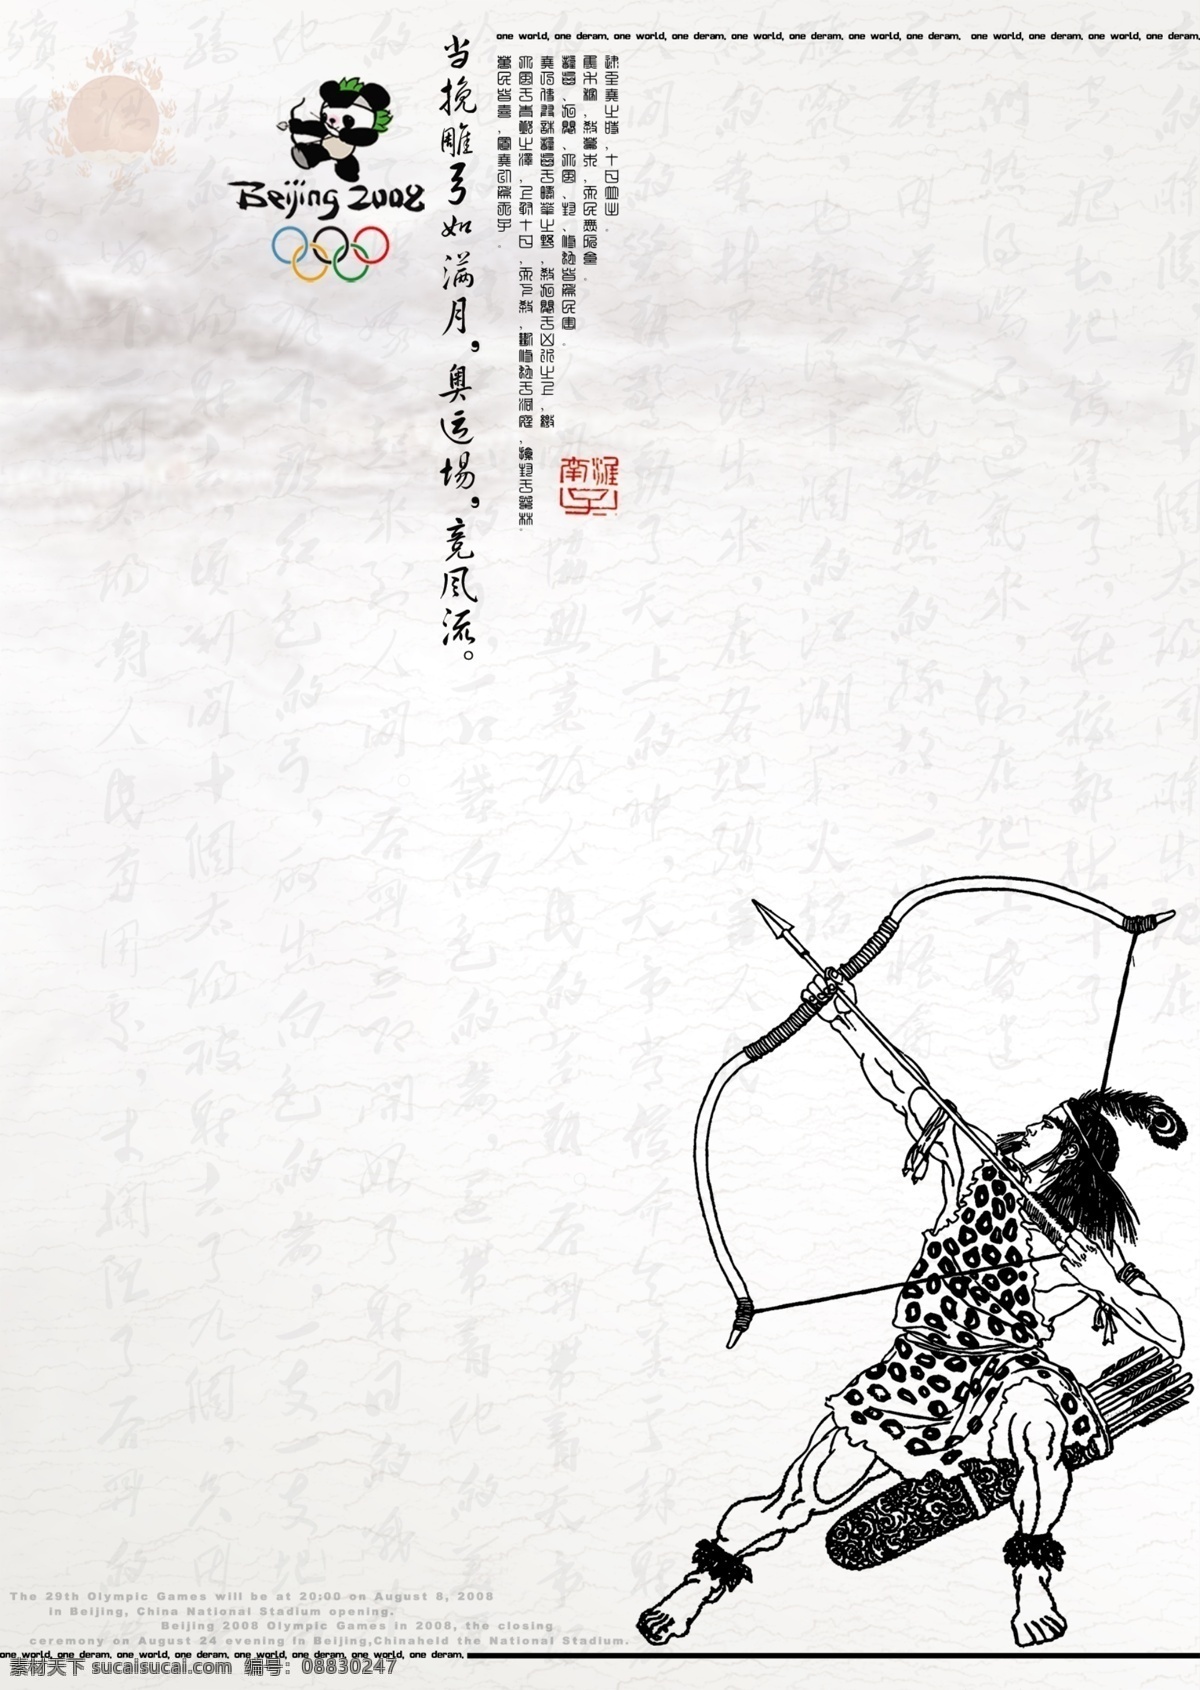 奥运 后羿射日 中国升华故事 射击 广告设计模板 其他模版 源文件库